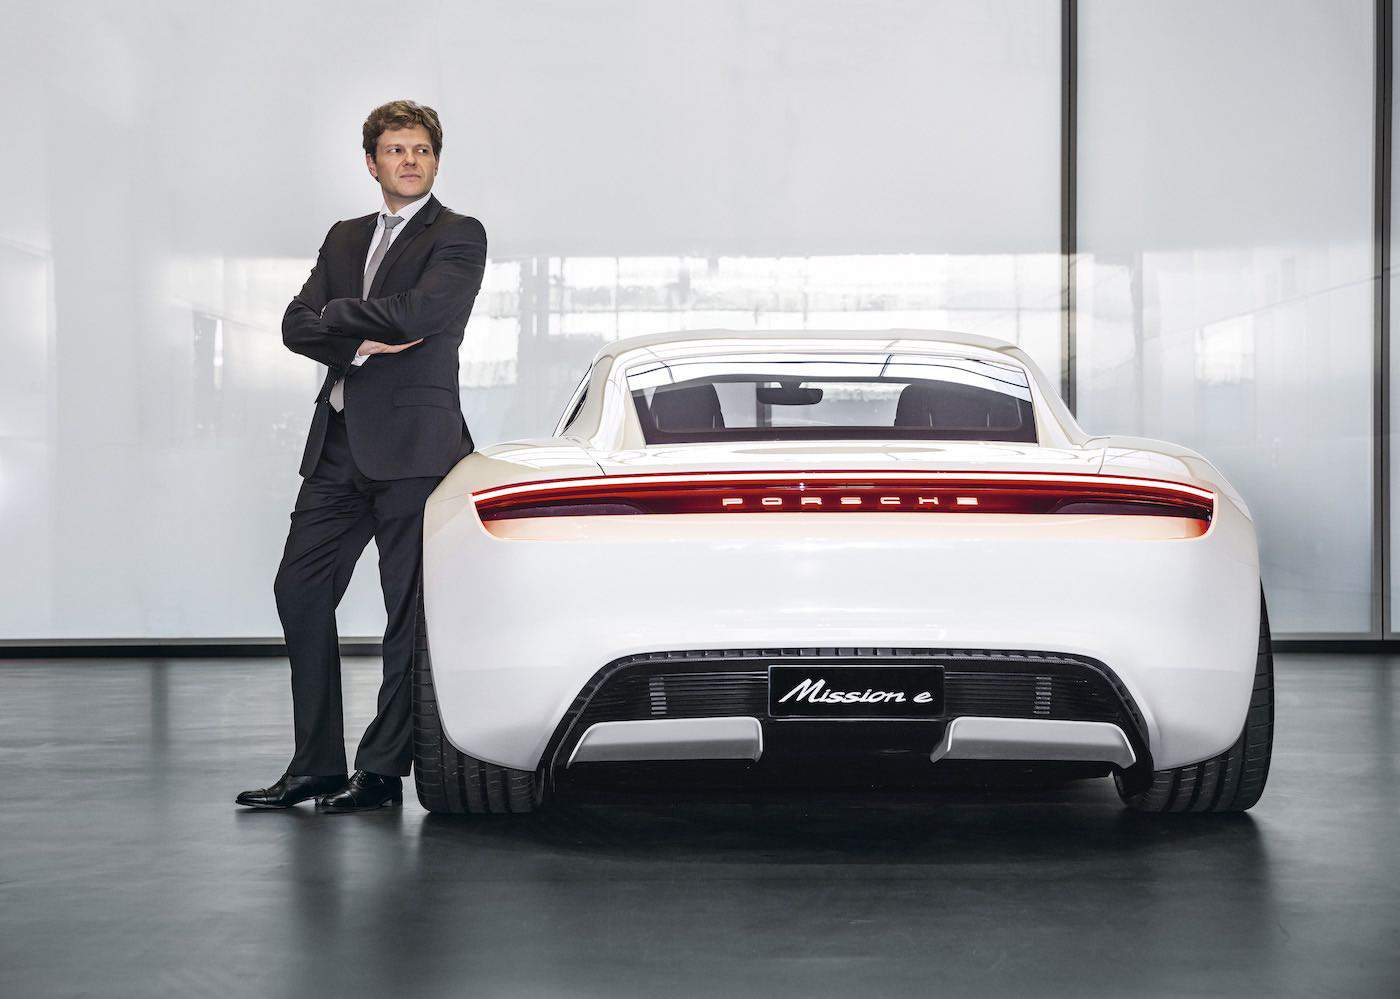 El TAYCAN ofrecerá el mismo placer de manejo que un Porsche convencional